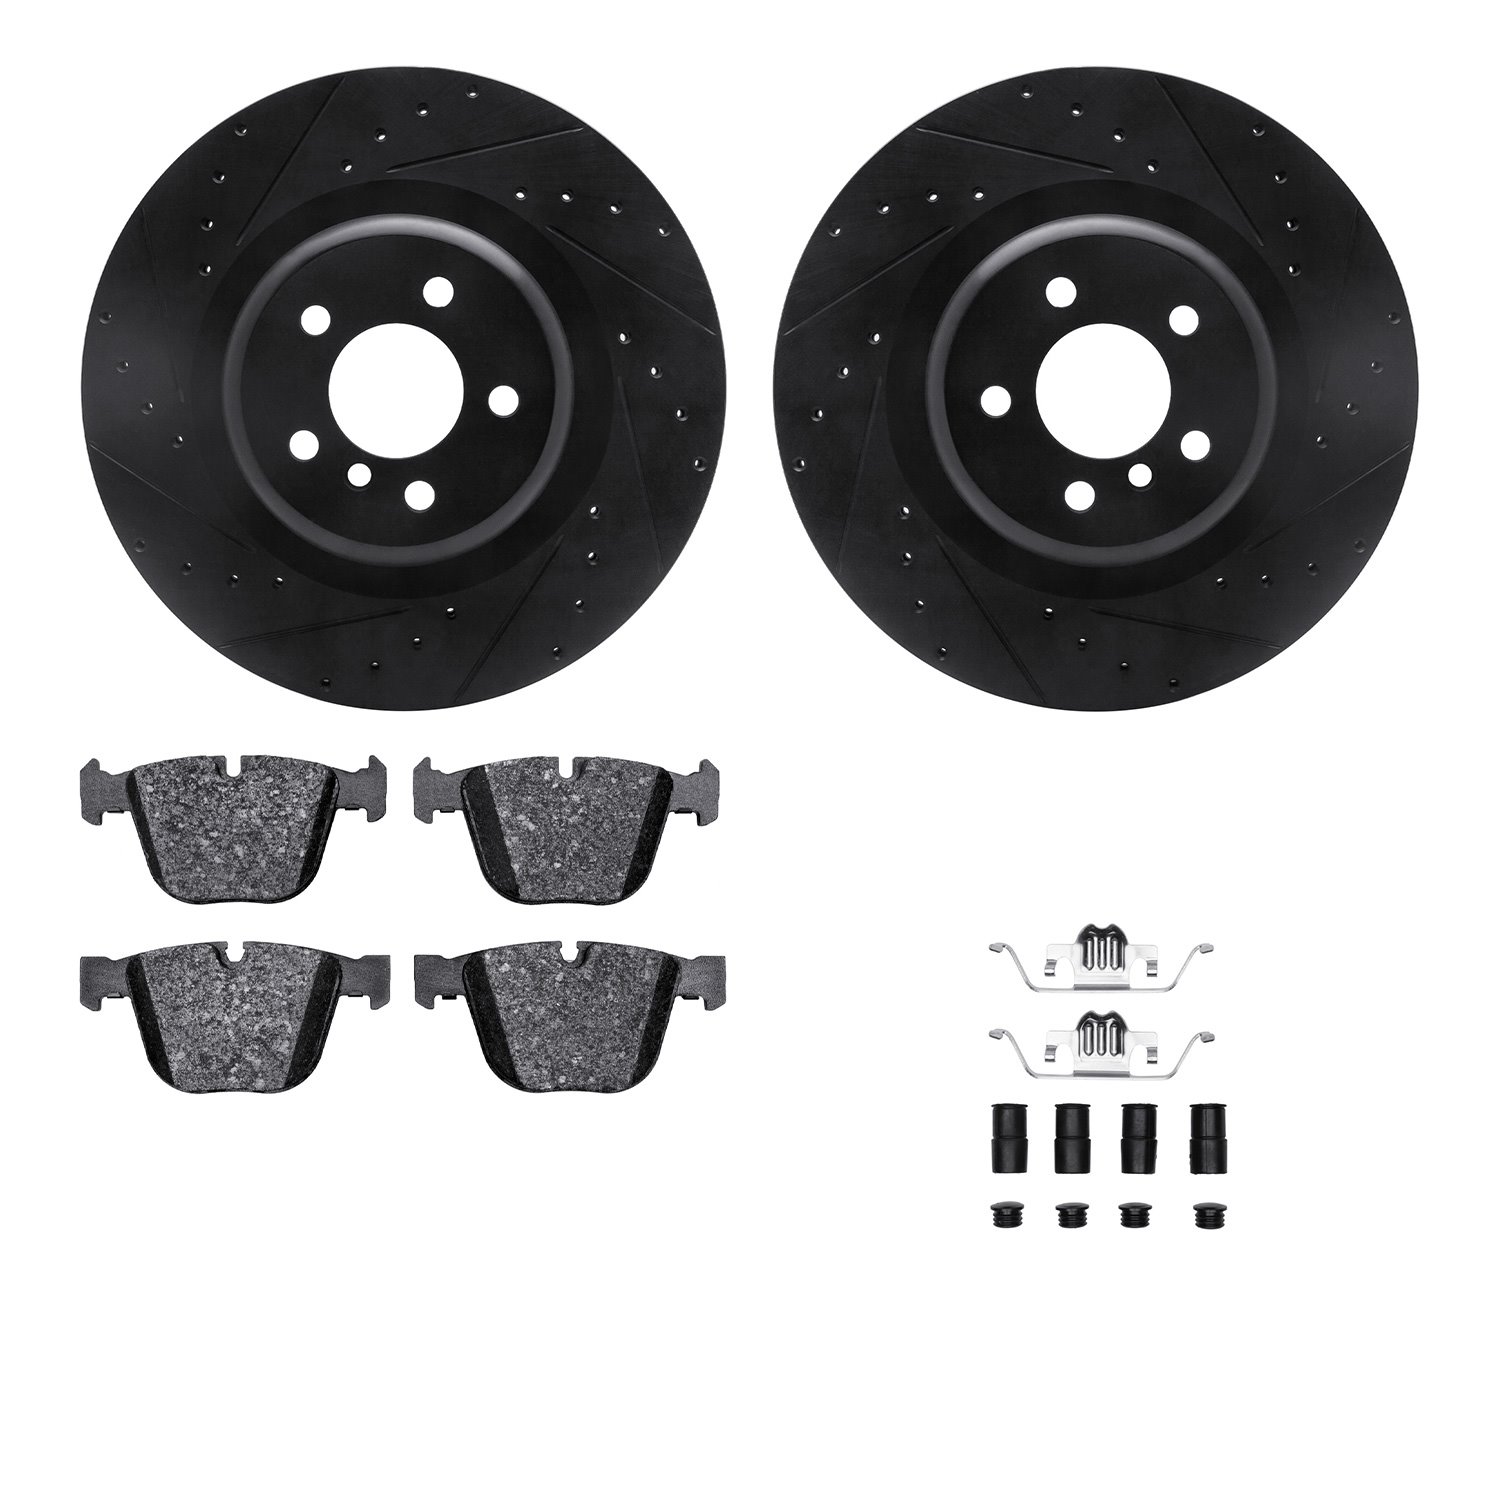 8612-31116 Drilled/Slotted Brake Rotors w/5000 Euro Ceramic Brake Pads Kit & Hardware [Black], 2010-2014 BMW, Position: Rear